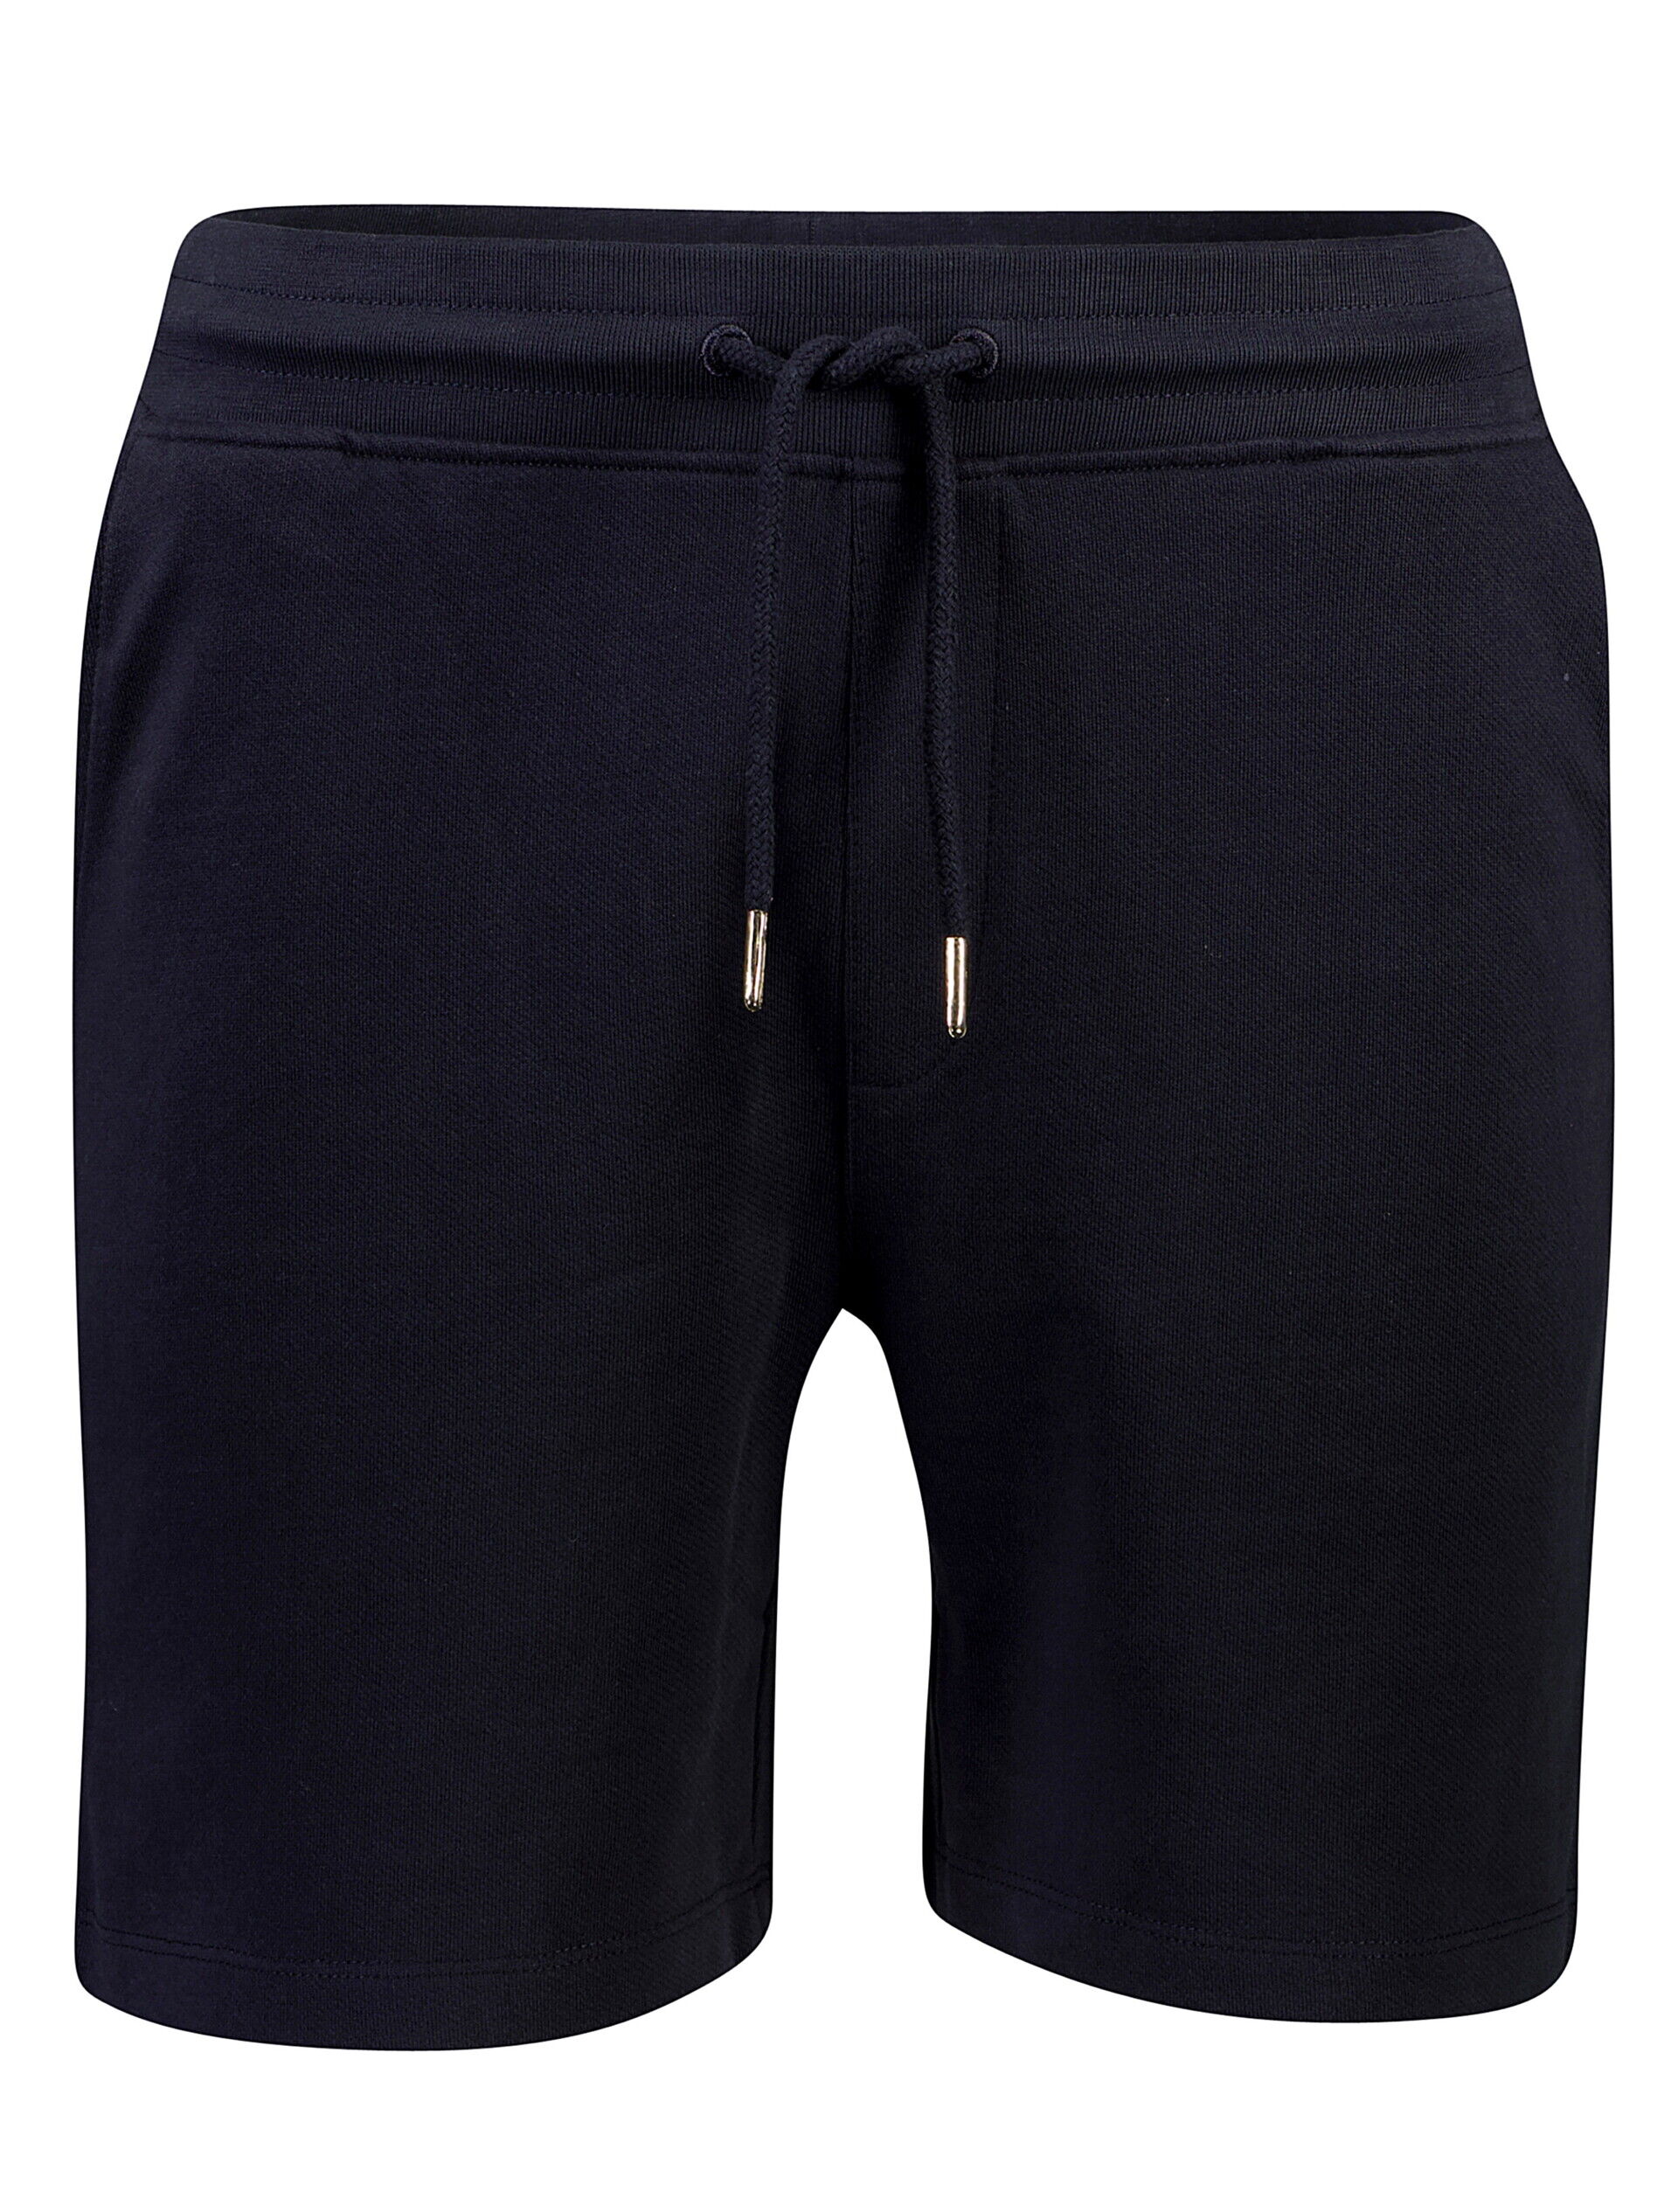 Casual shorts Casual shorts Blå 30-508080